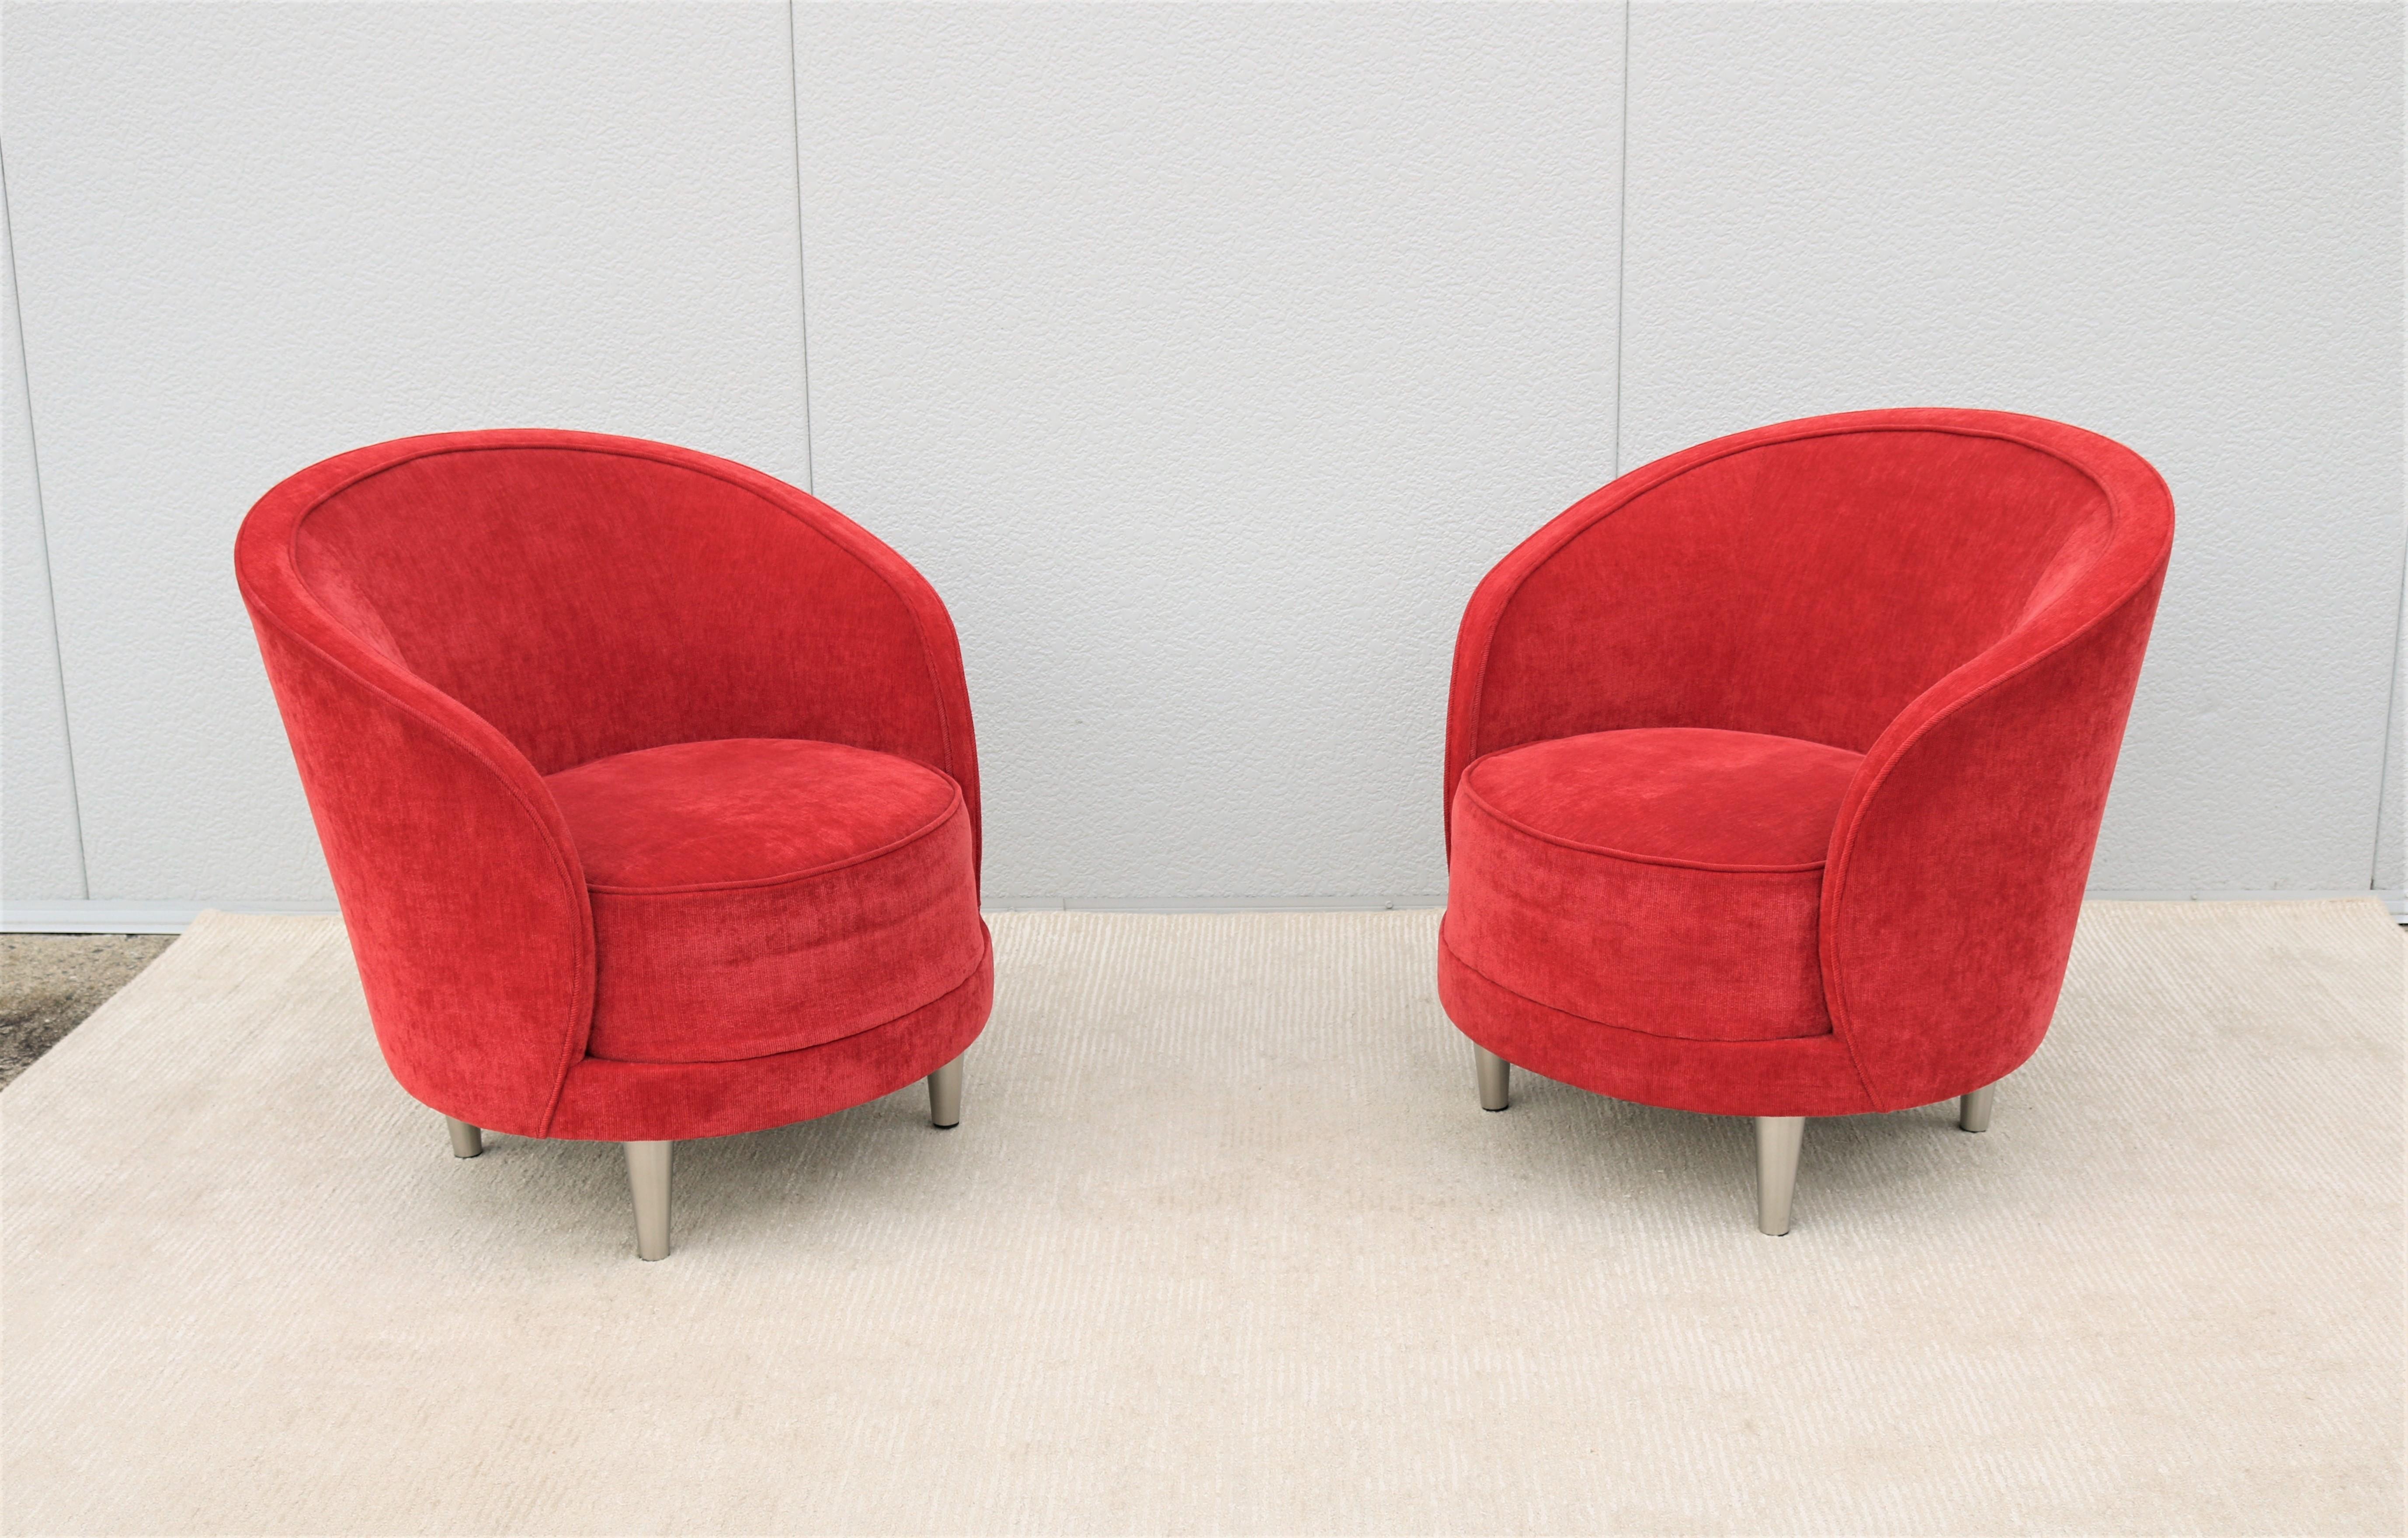 Elegantes und stilvolles Paar Kinsale Barrel Chair von Martin Brattrud.
Mit einem sehr bequemen Sitzkissen und einer ergonomisch geformten Rückenlehne.
Wunderschön geformt und handgefertigt aus hochwertigem MATERIAL und Handwerkskunst.
Das